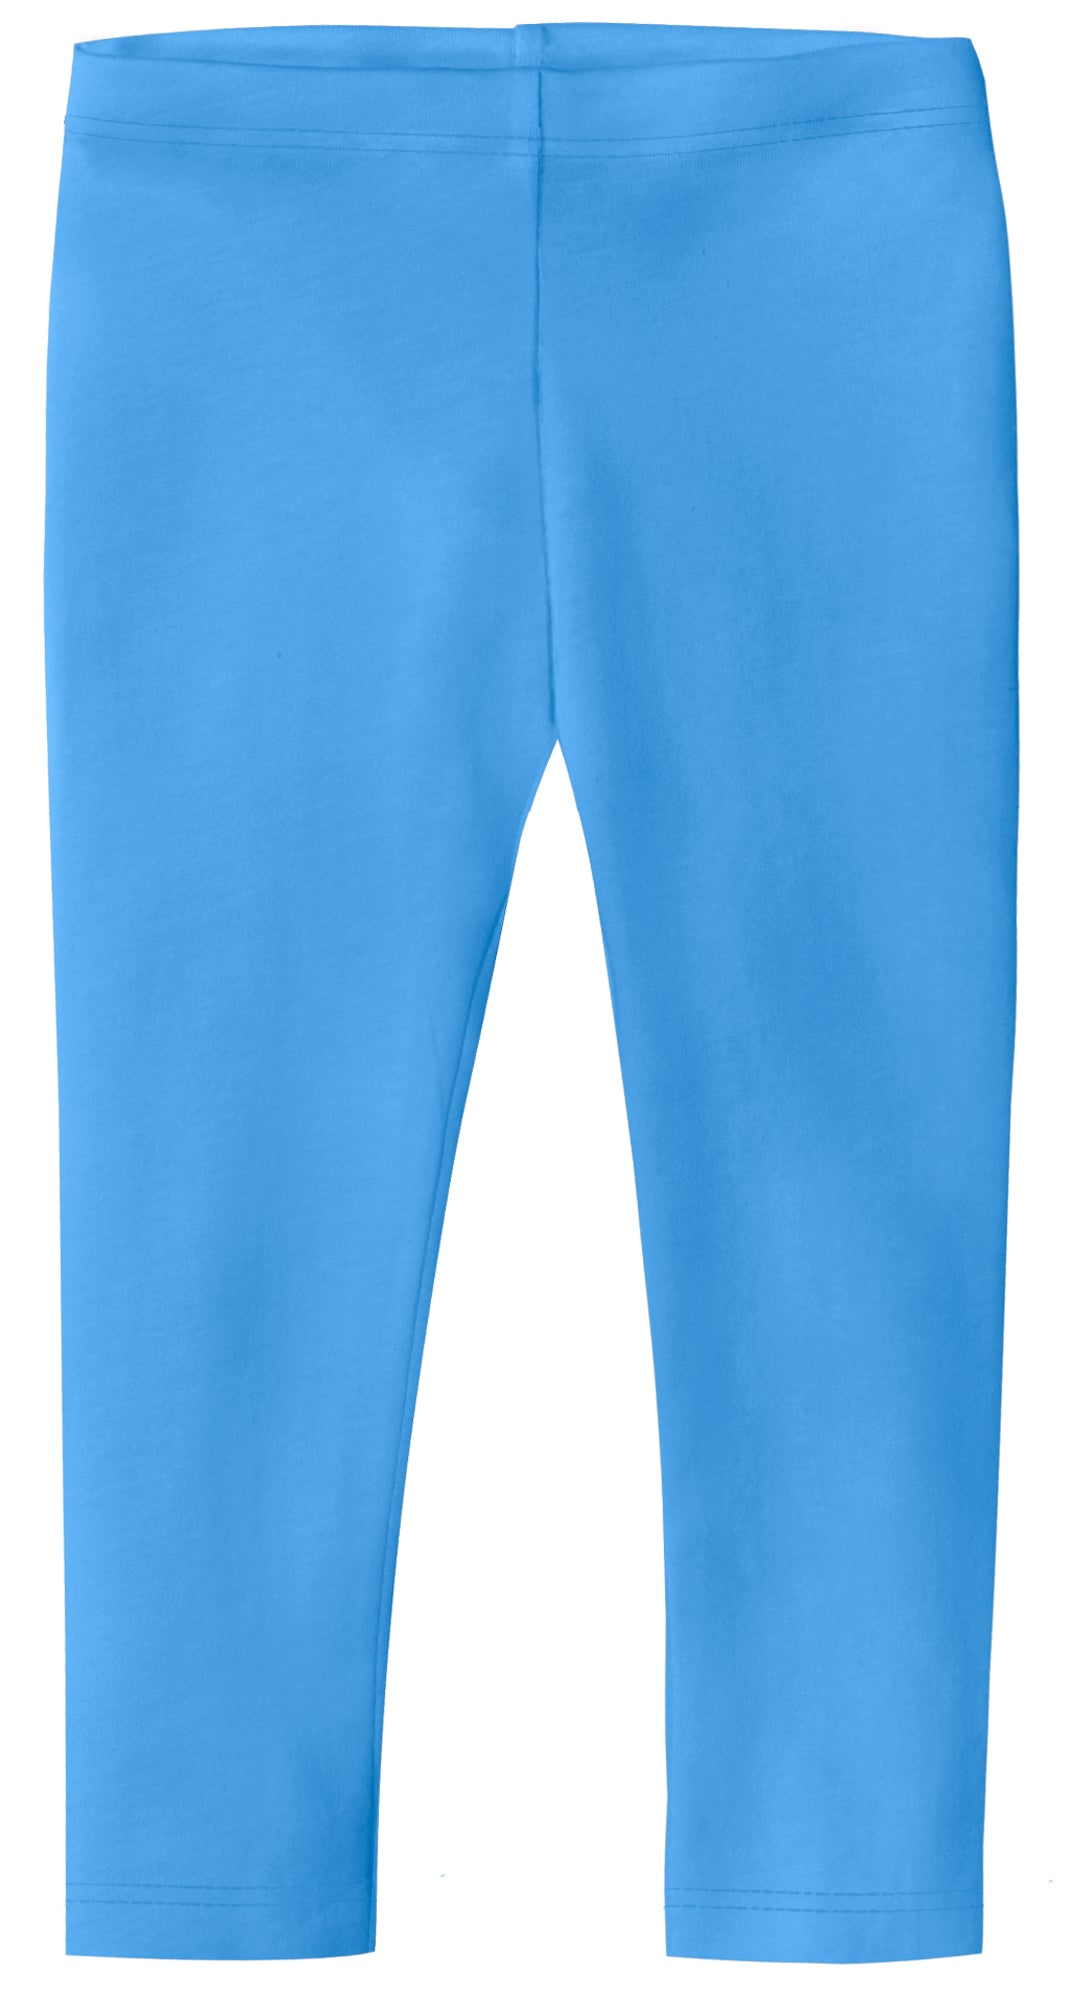 Crivit Ladies Athletic Capris Spots Leggings Blue Size L 12/14 90